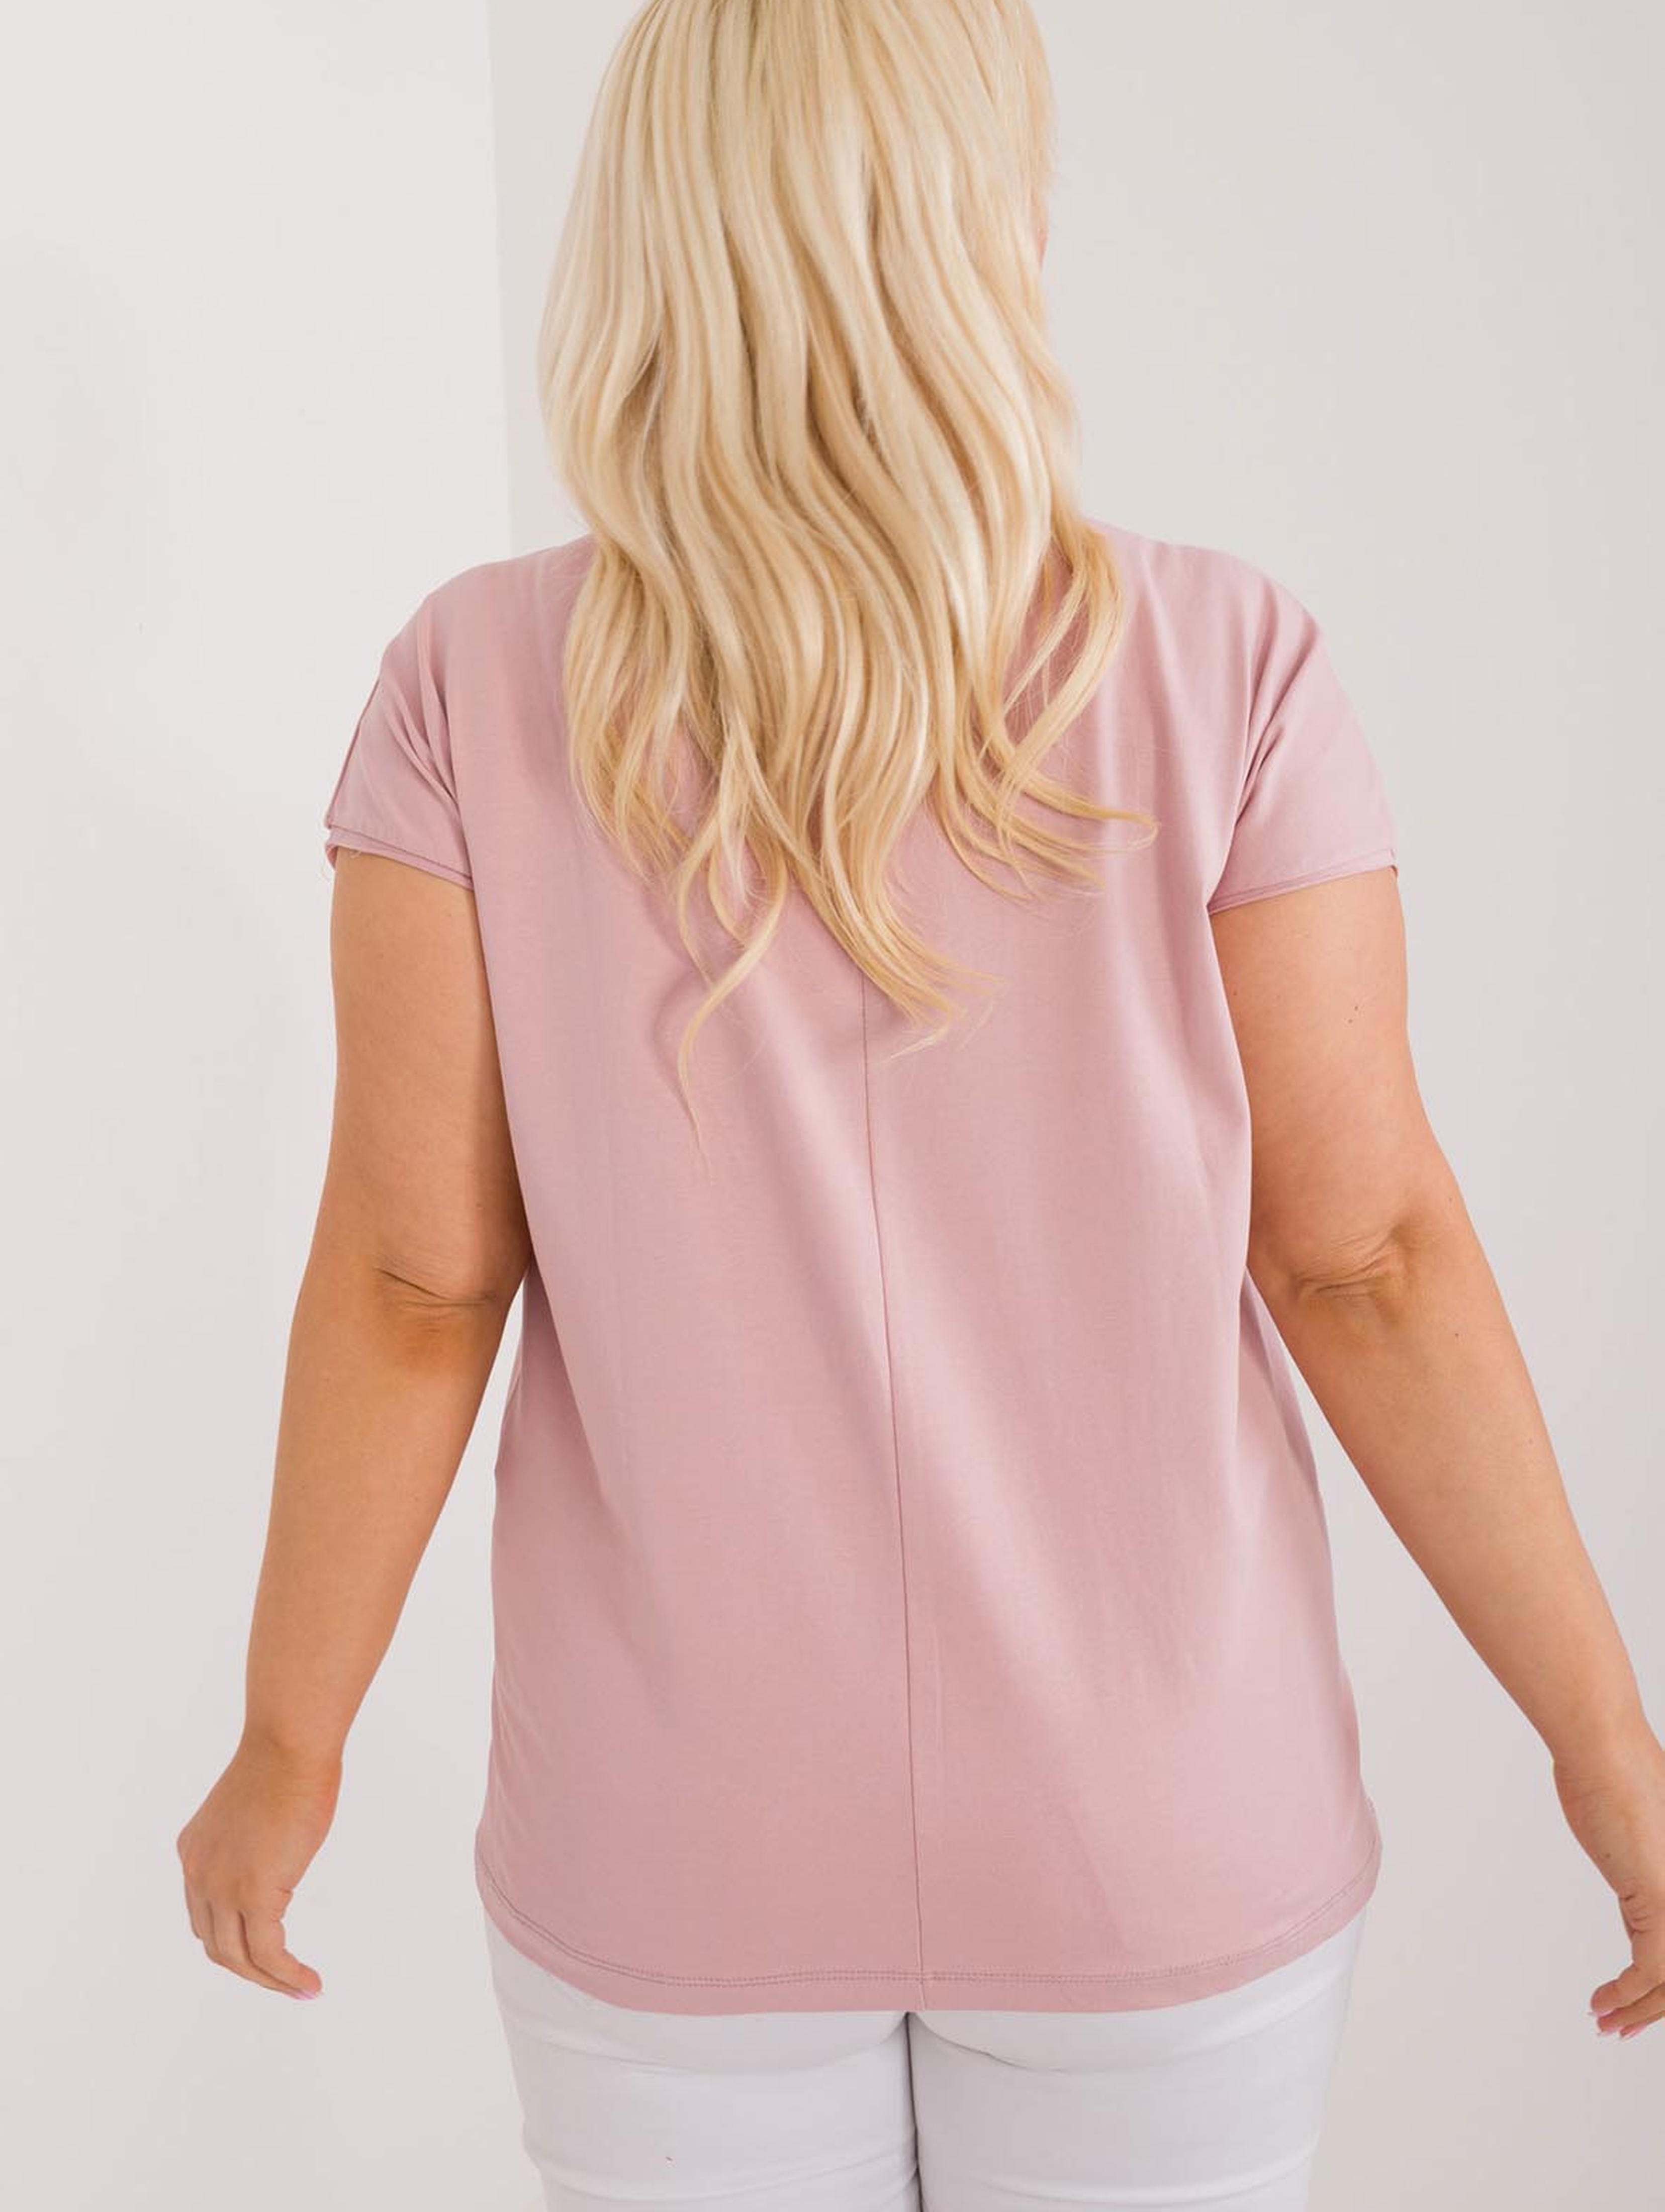 Bawełniana bluzka plus size z naszywką jasno różowa